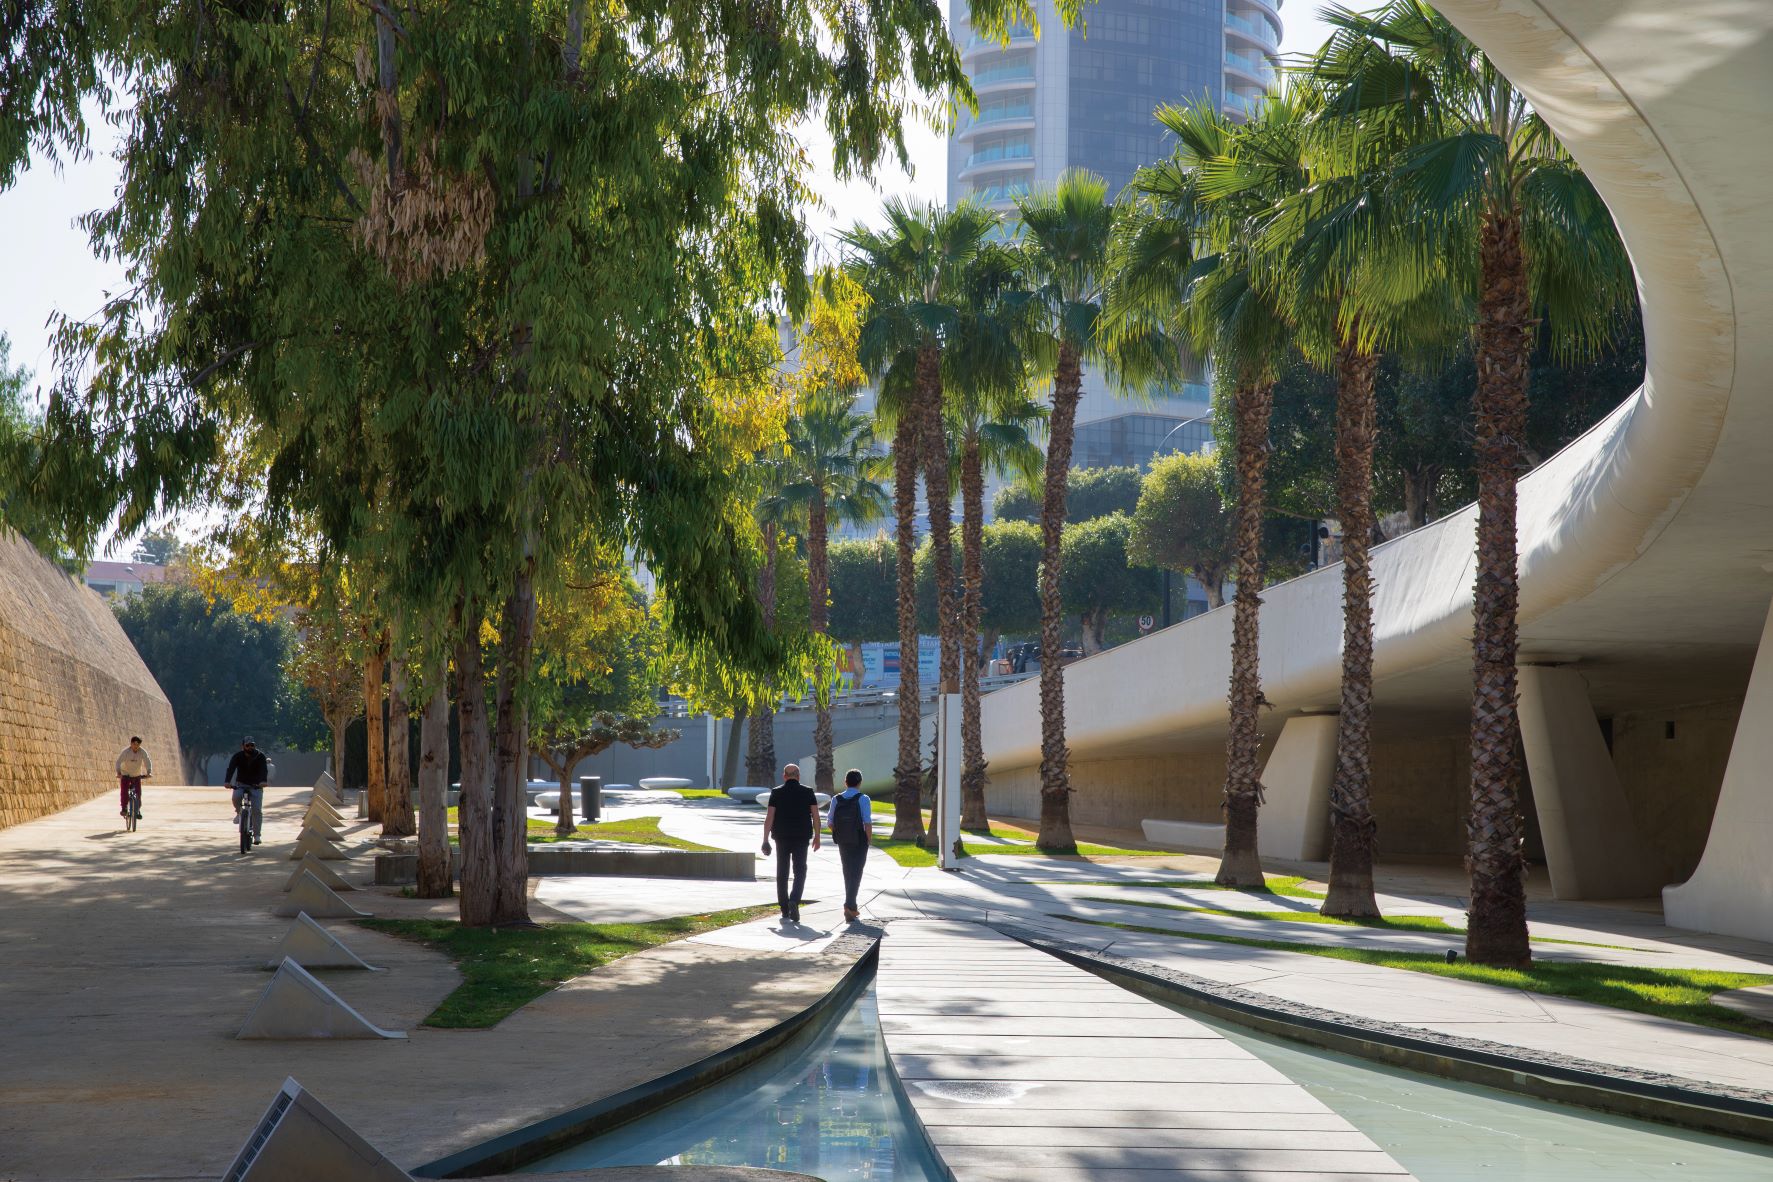 以流线几何设计来描绘流动意象的 Eleheria 广场公园，也以大量的树木植栽建构出美丽的城市绿化带。